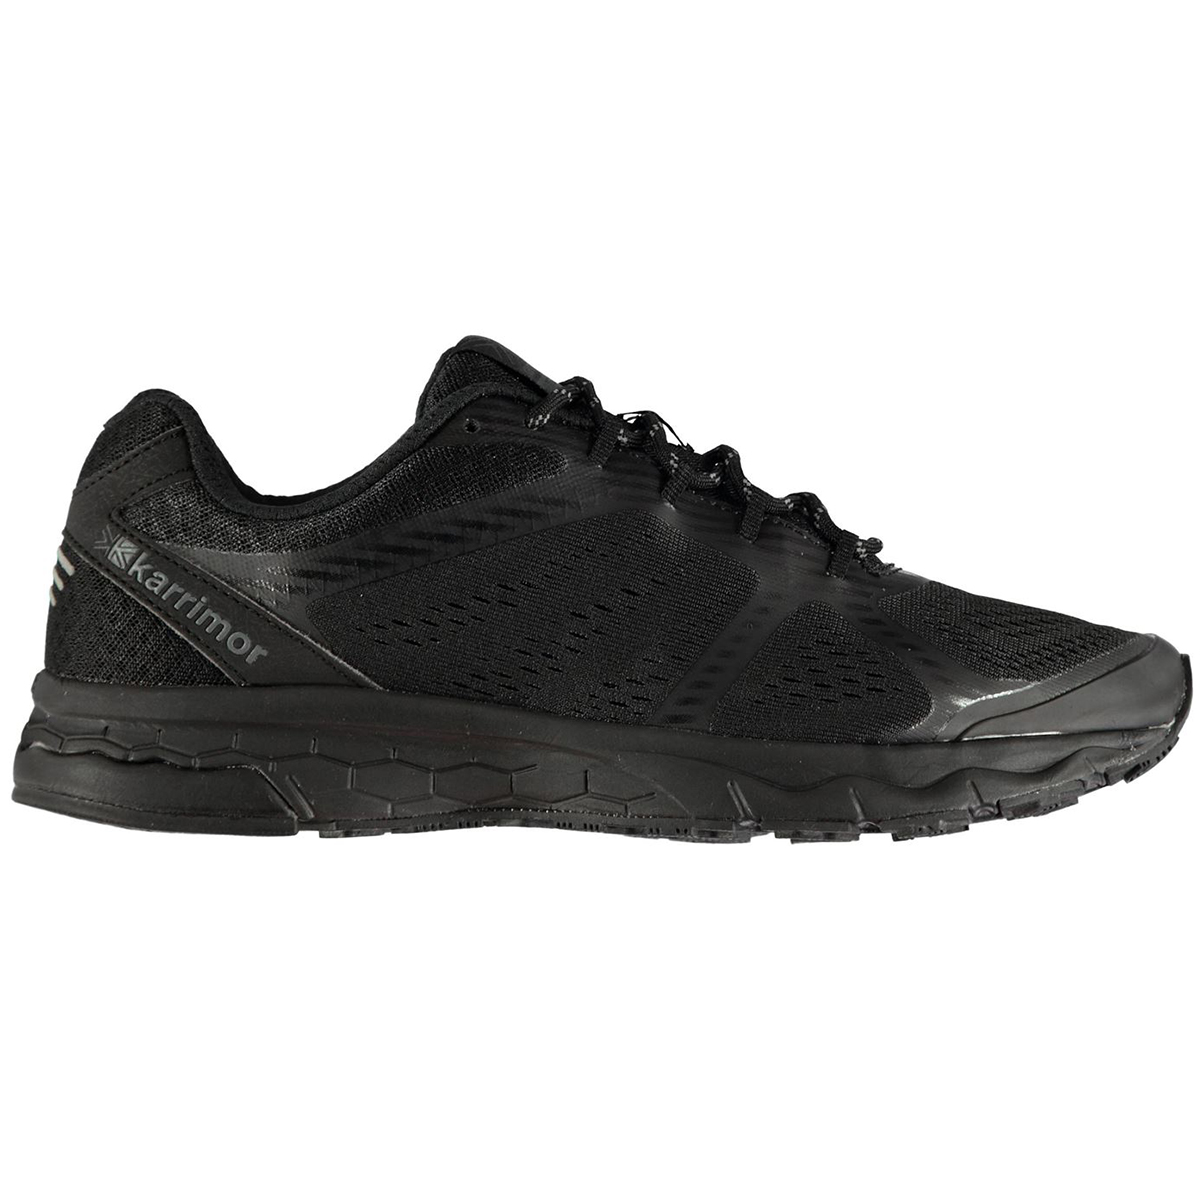 Karrimor Men's Tempo 5 Running Shoes - Black, 11